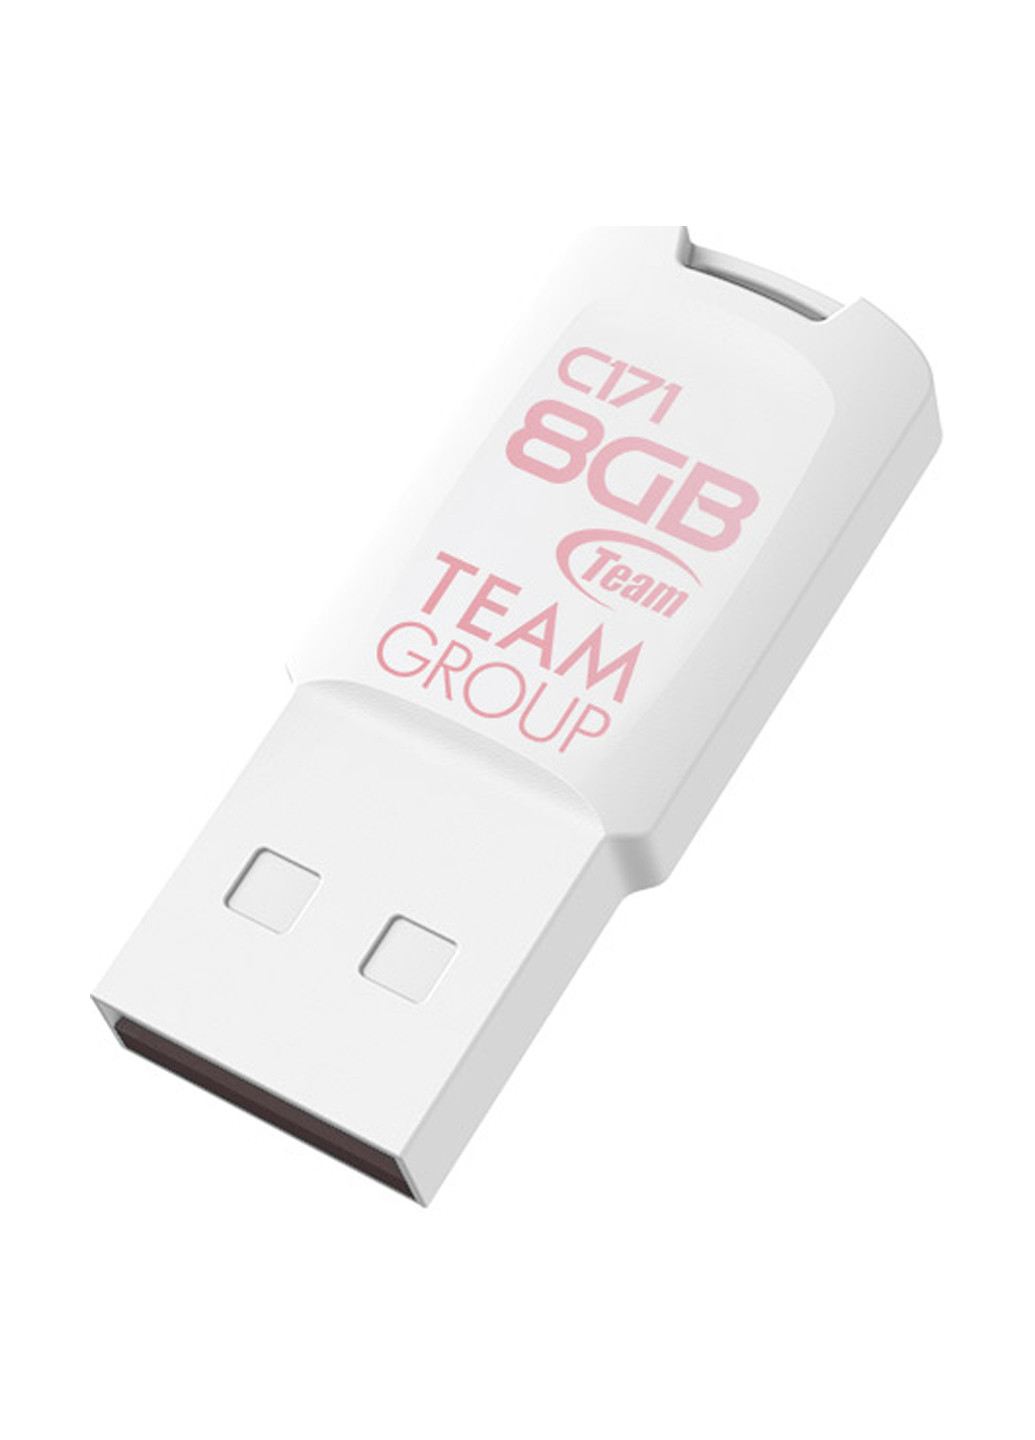 Флеш память USB C171 8GB White (TC1718GW01) Team флеш память usb team c171 8gb white (tc1718gw01) (134201738)